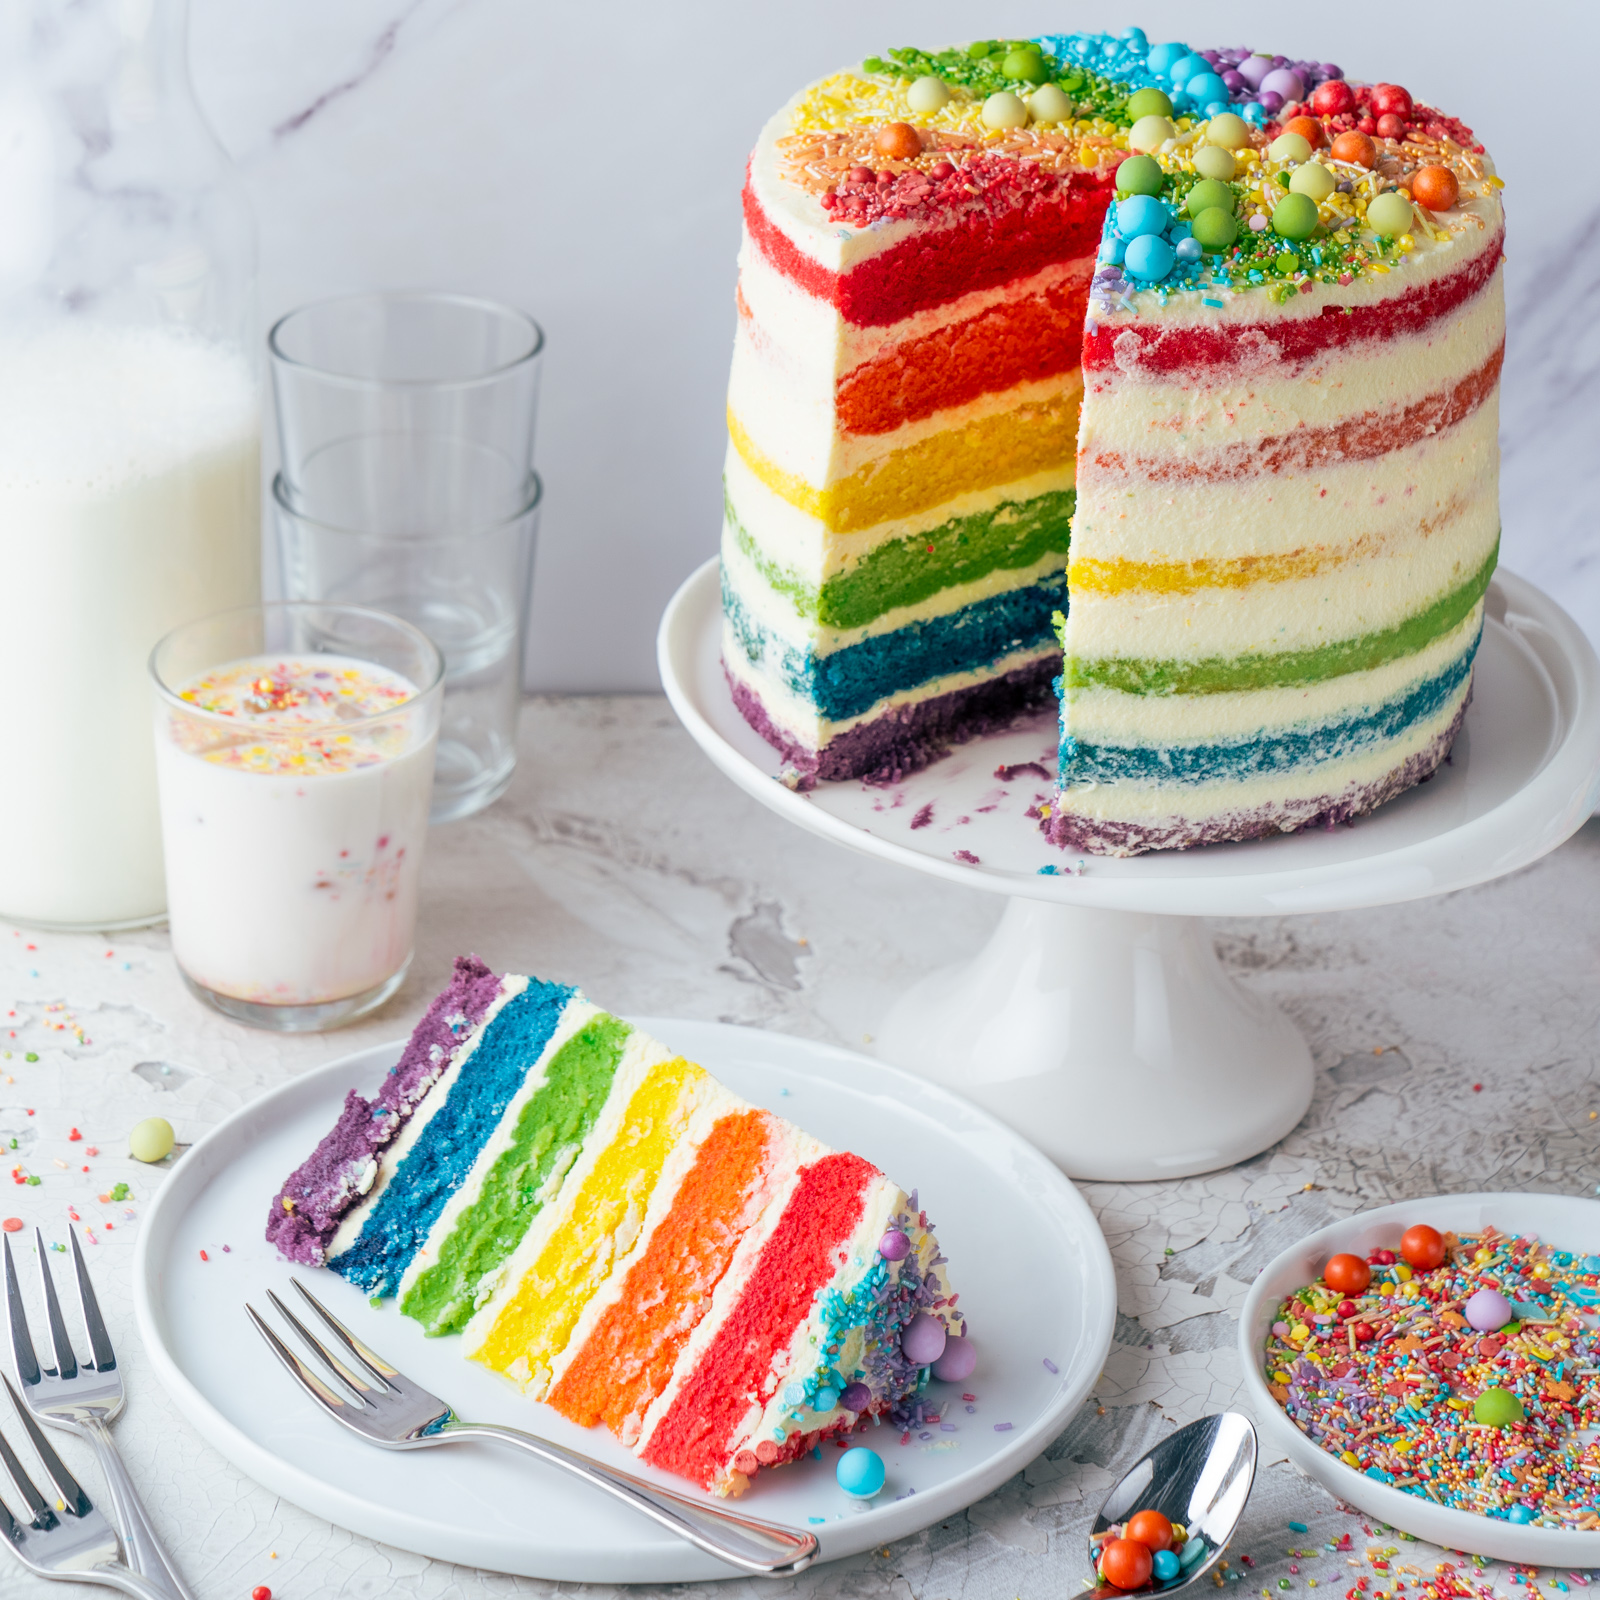 Regenbogen Torte 47 | Born this way! Heute wird es bunt und das ist gut so. Der Juni ist der alljährliche Pride-Monat und 2021 hat unsere Regenbogen-Torte ein Makeover defintiv verdient, denn ihr seid schon seit 2017 ganz verrückt nach diesem absoluten Leckerbissen! Aber was hat es mit der Regenbogenflagge eigentlich genau auf sich? Wir werden dem mal ein wenig auf den Grund gehen und dabei gibt es ein großes Stück Rainbow Cake.